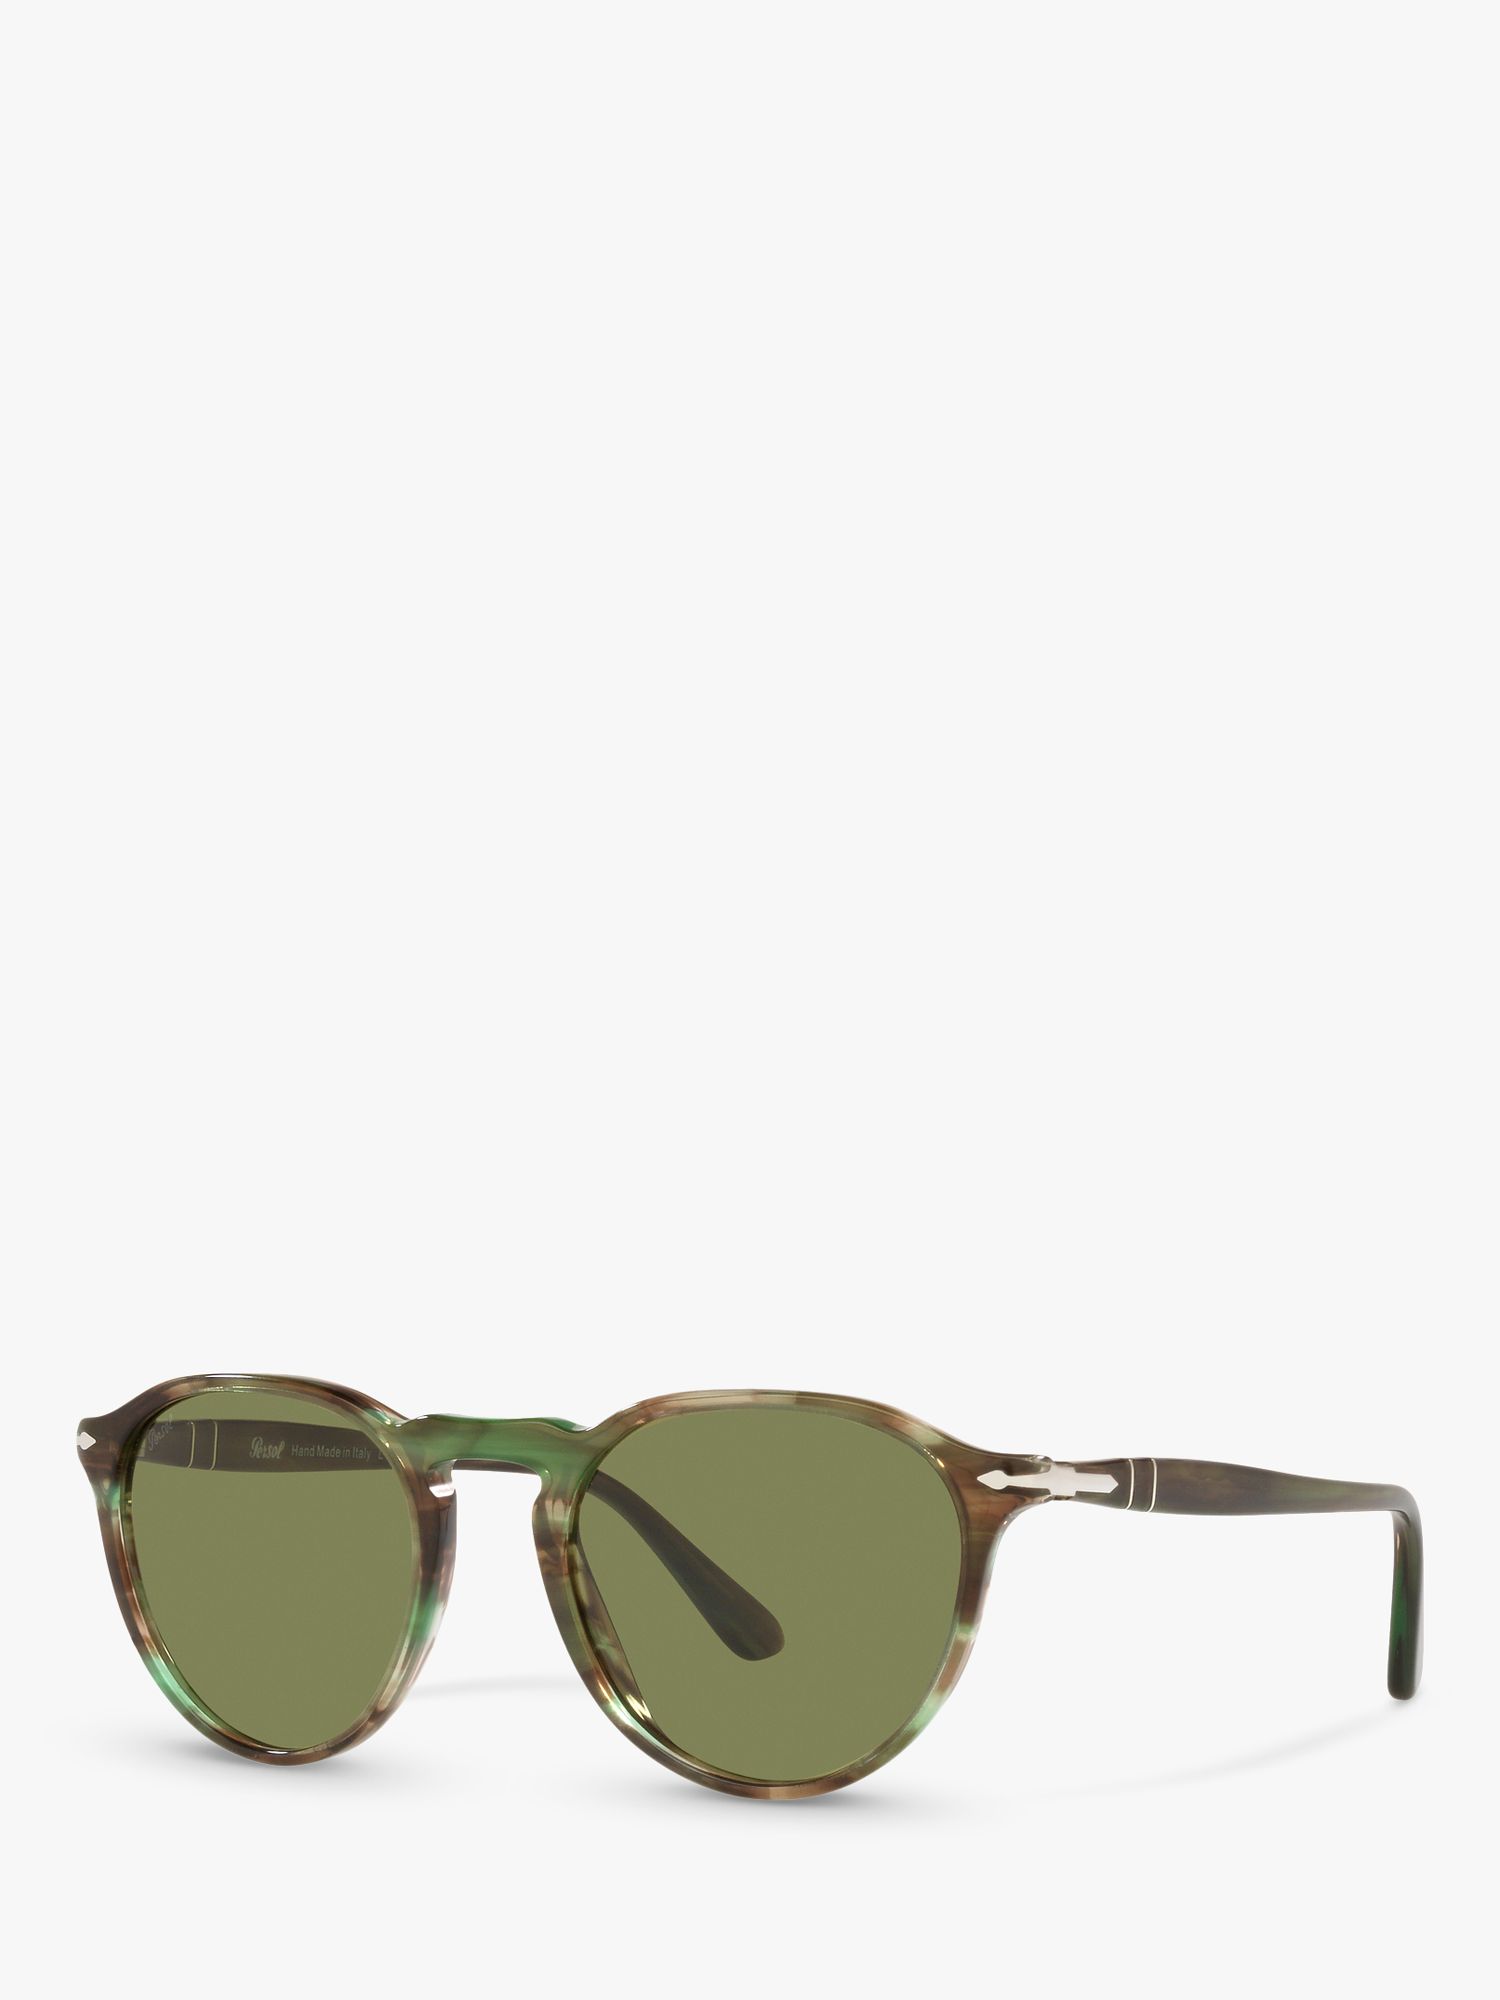 Persol PO3286S Овальные солнцезащитные очки унисекс, зеленые Гавана/Зеленые